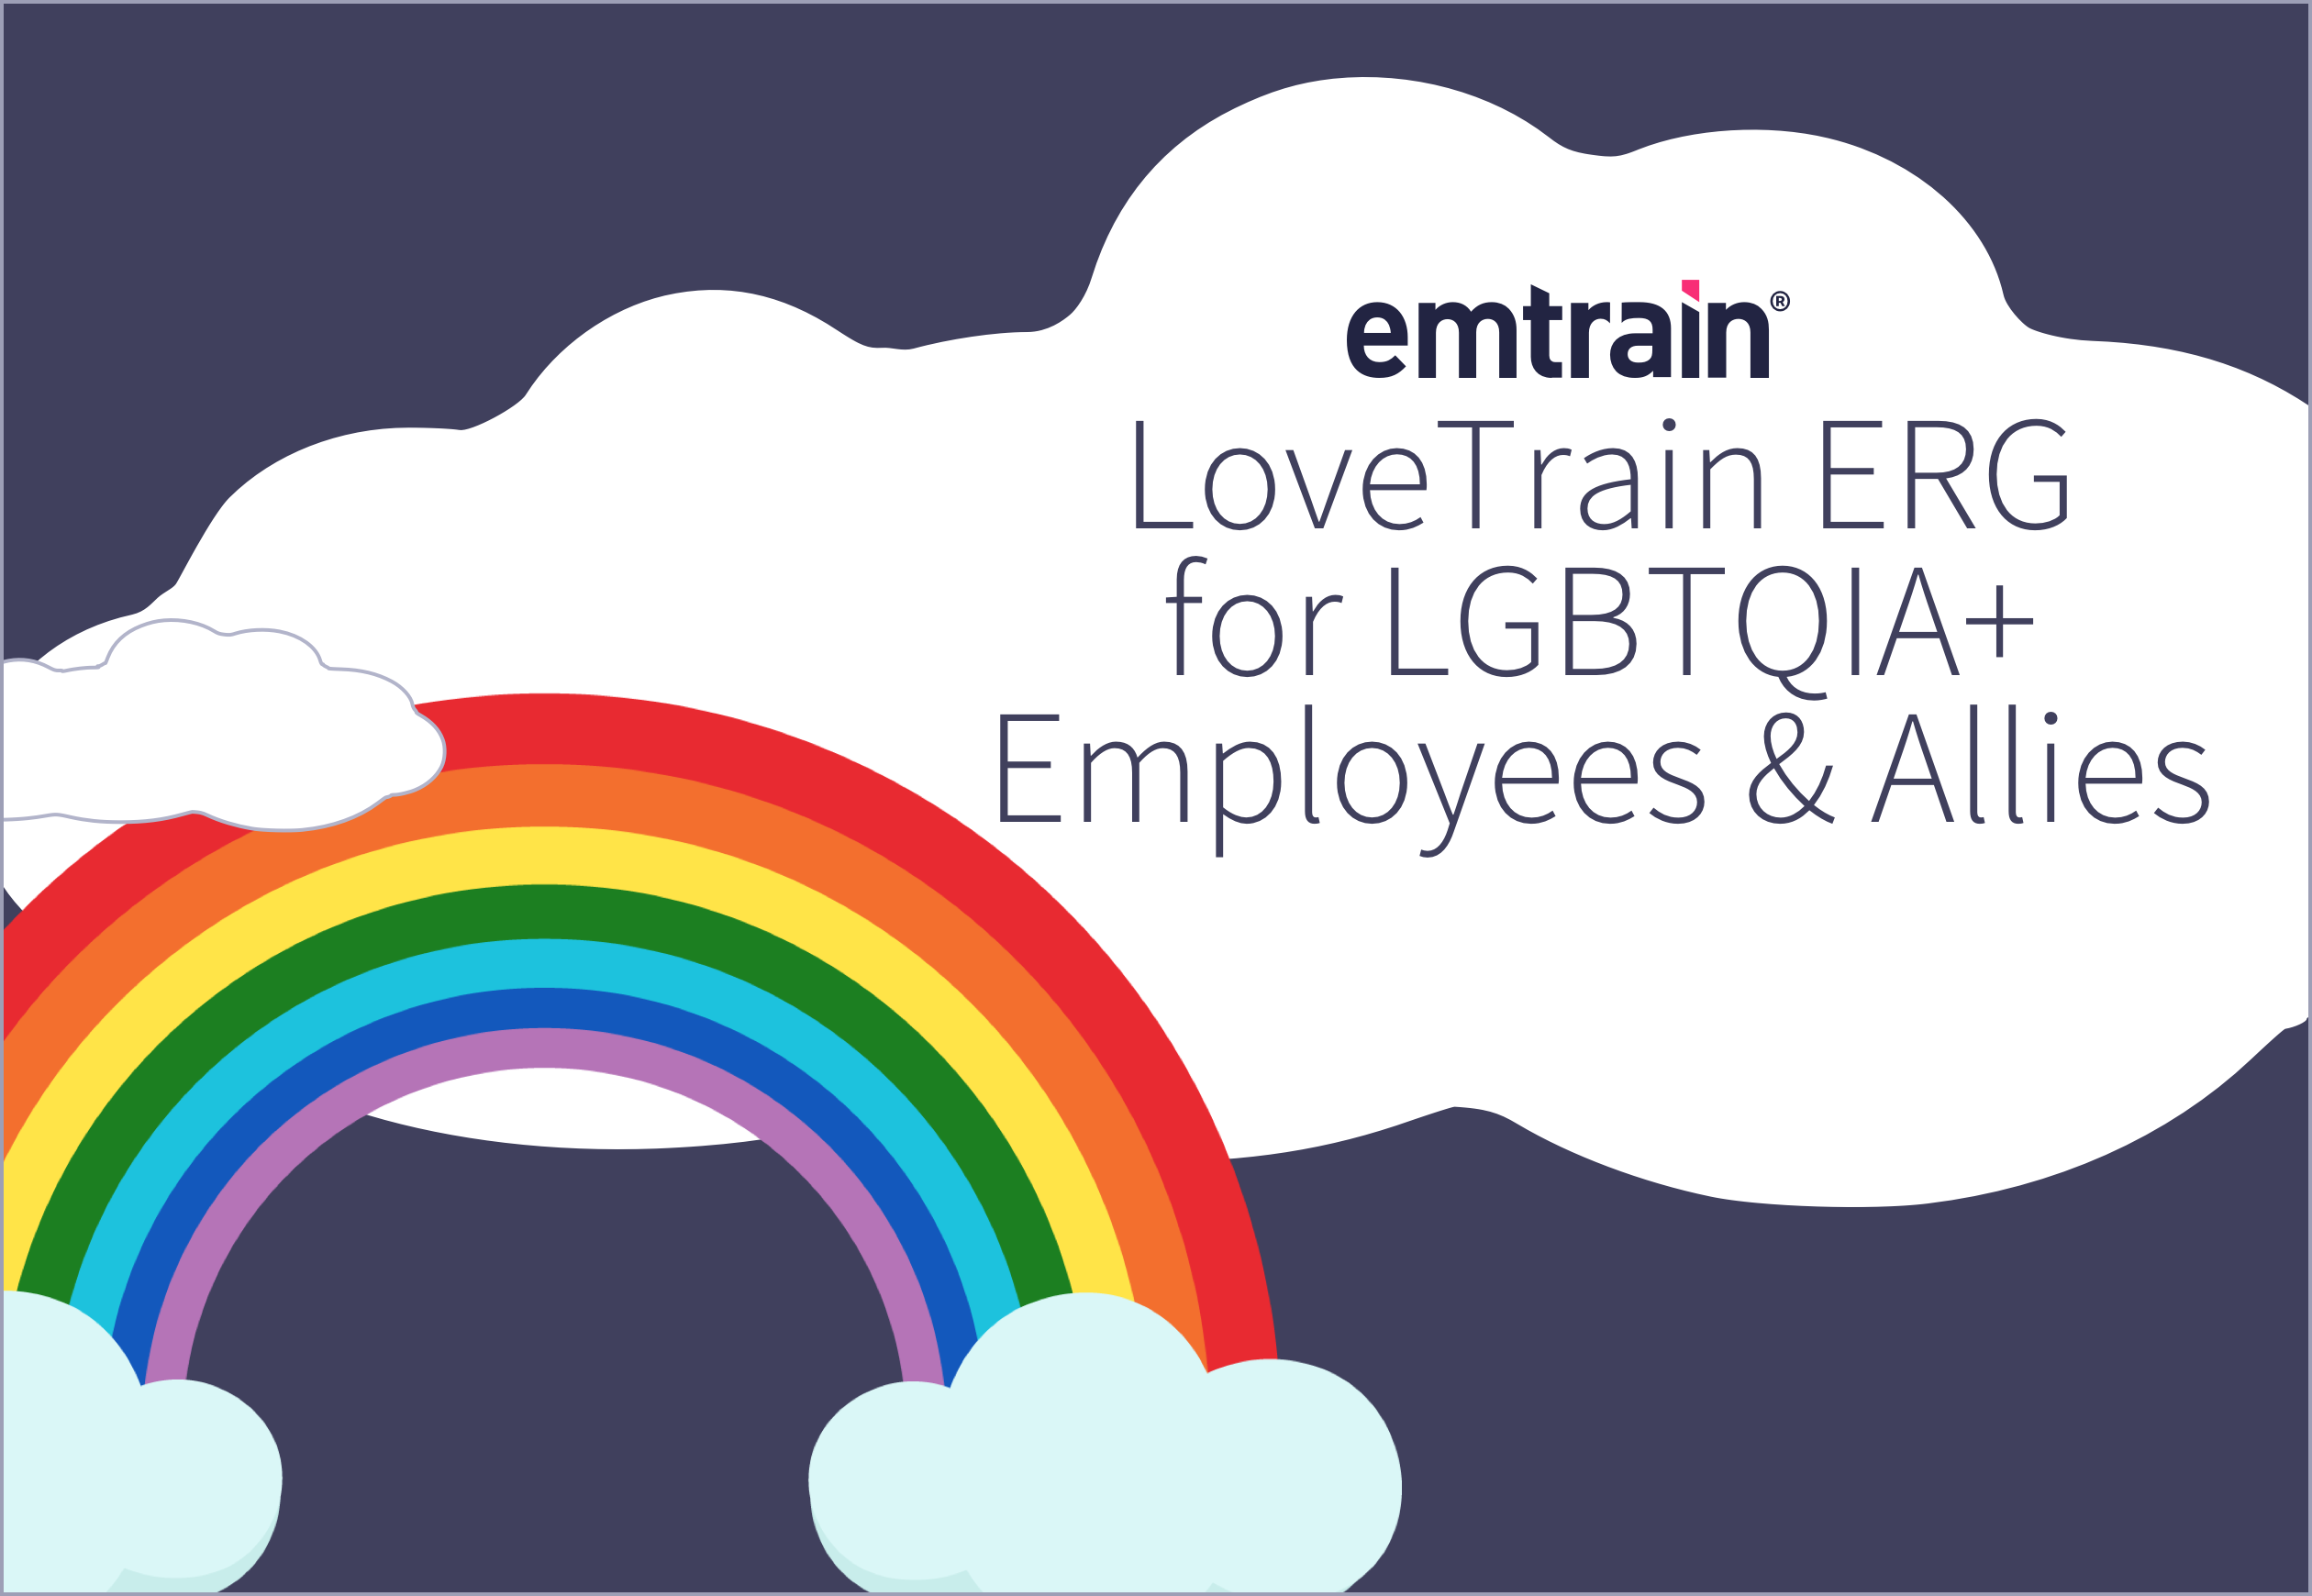 LoveTrain ERG for LGBTQIA+ Employees & Allies